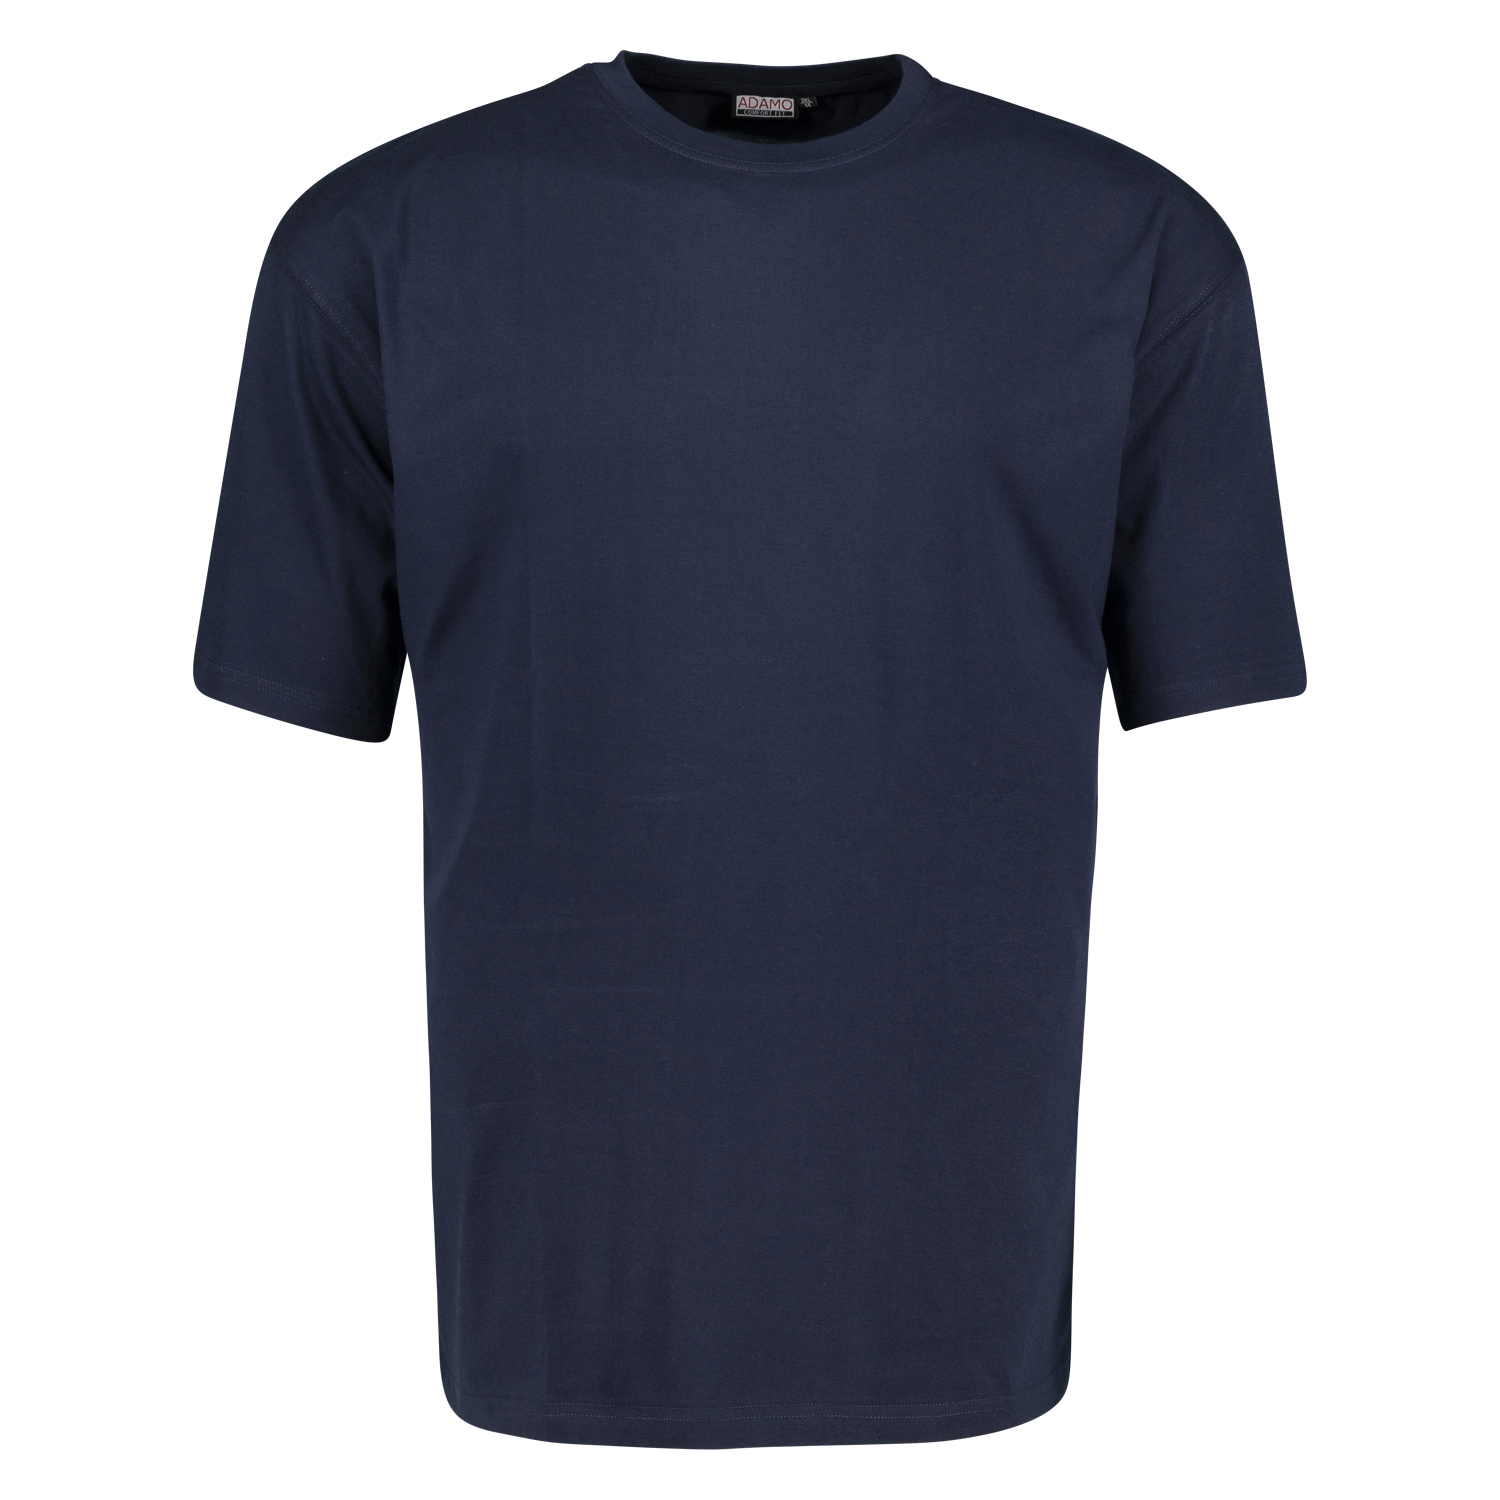 T-shirt bleu marine Marlon CONFORT FIT by ADAMO jusqu'à la grande taille 18XL - pack de deux